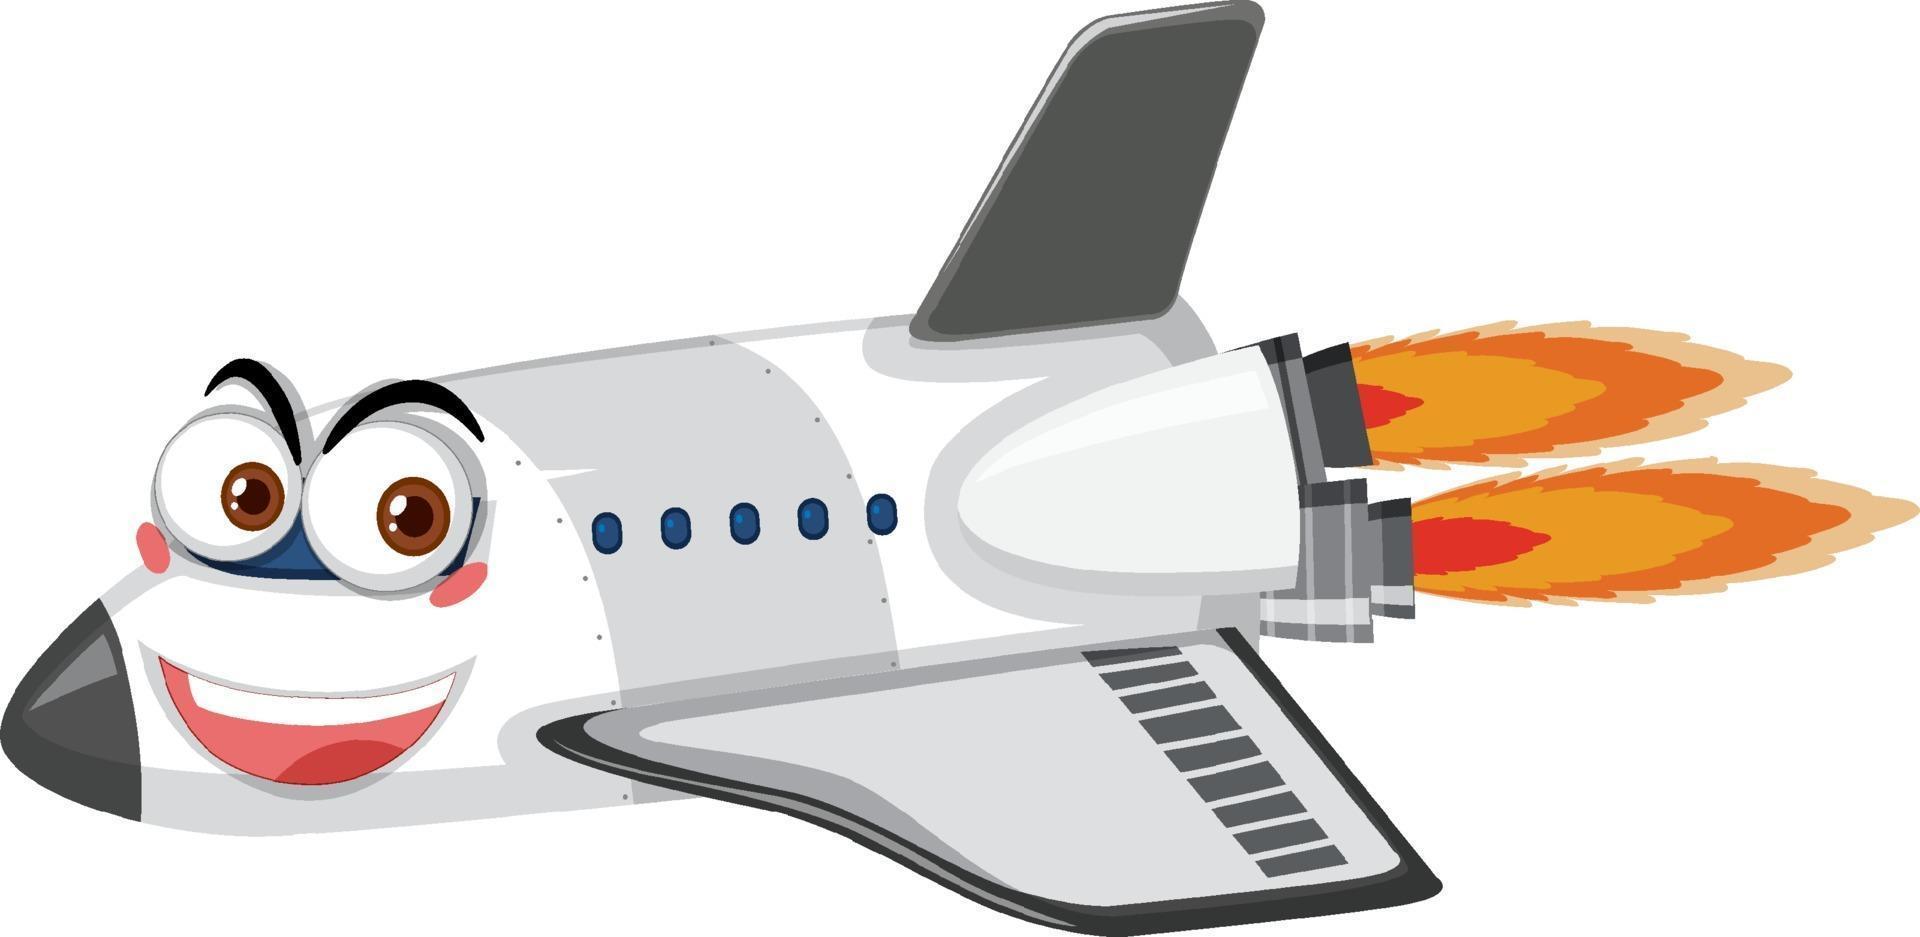 Flugzeugkarikaturfigur mit Gesichtsausdruck auf weißem Hintergrund vektor